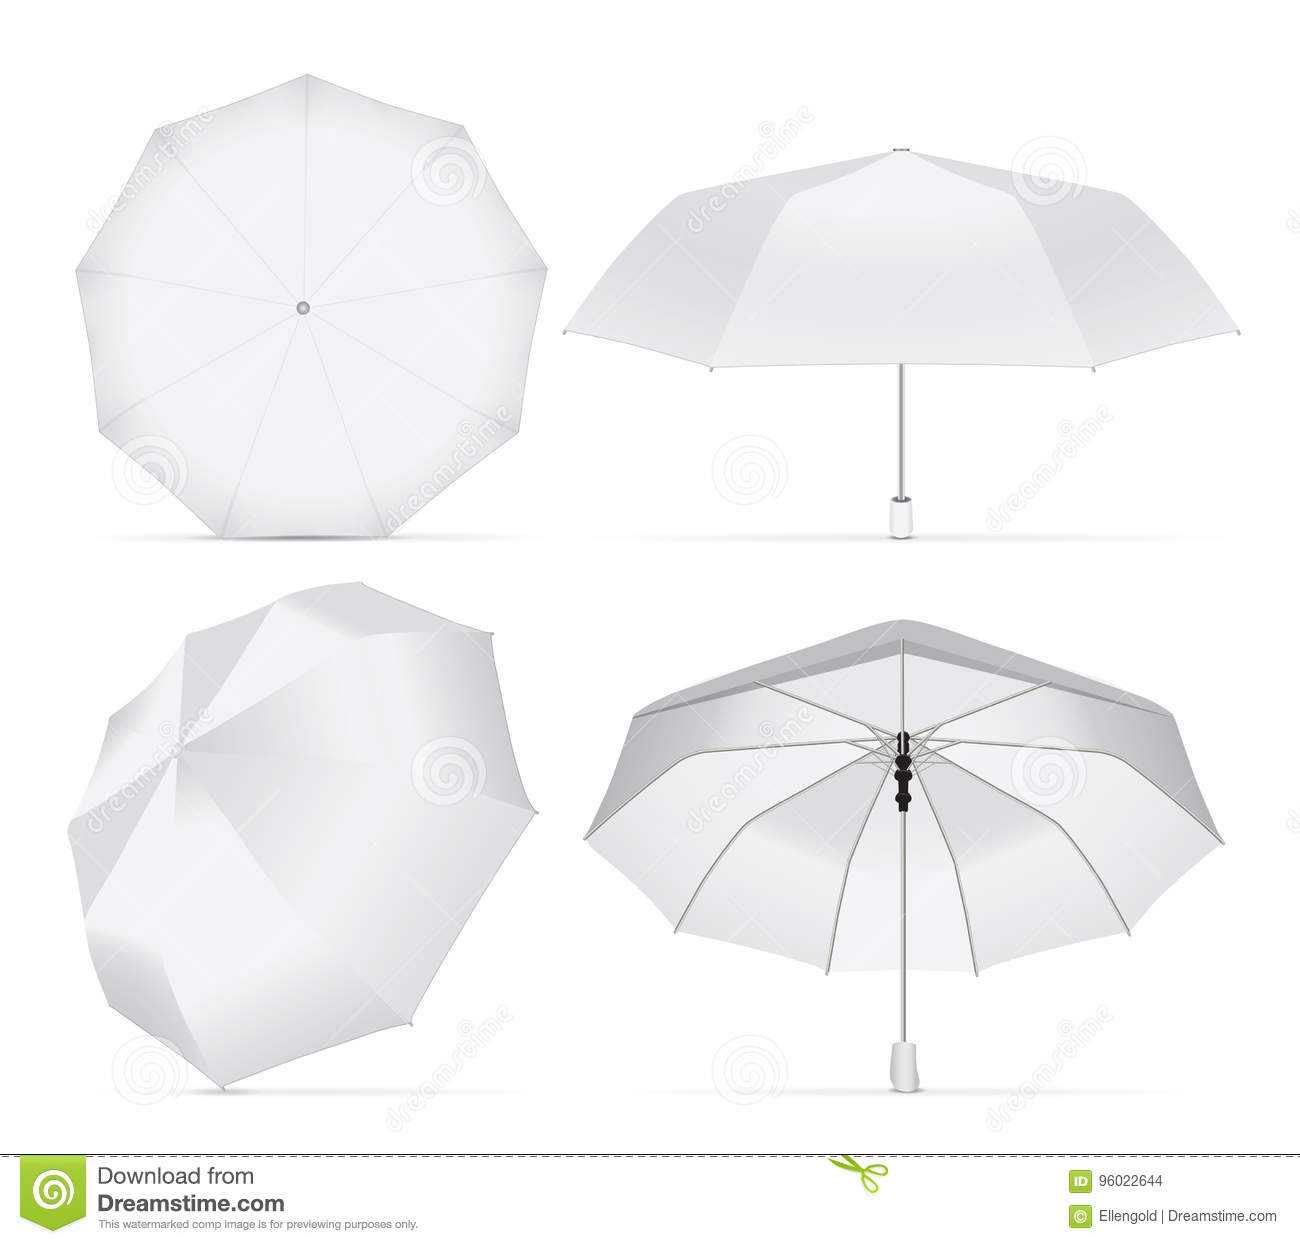 Umbrella For Your Design And Logo. Stock Vector Throughout Blank Umbrella Template